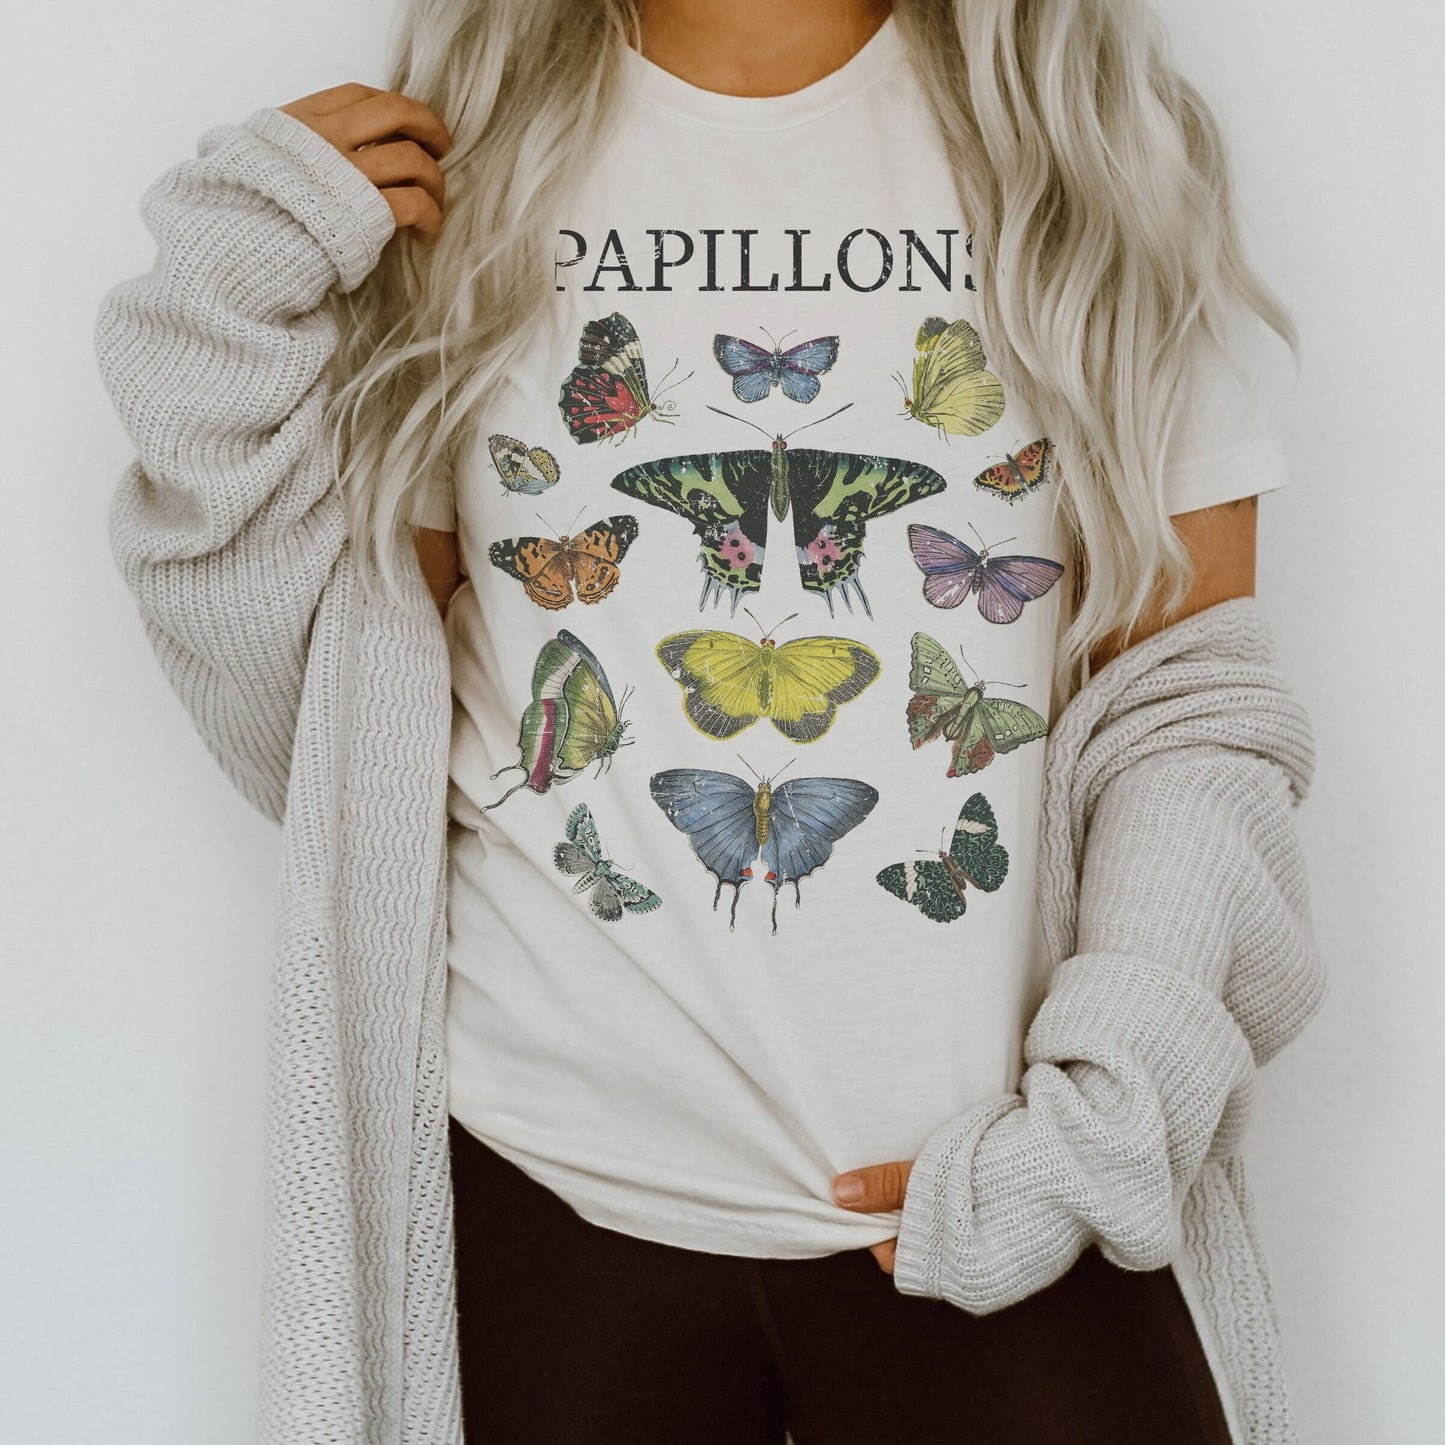 Papillons Butterflies Butterfly Ultra Soft Graphic Tee Unisex Soft Tee T-shirt for Women or Men